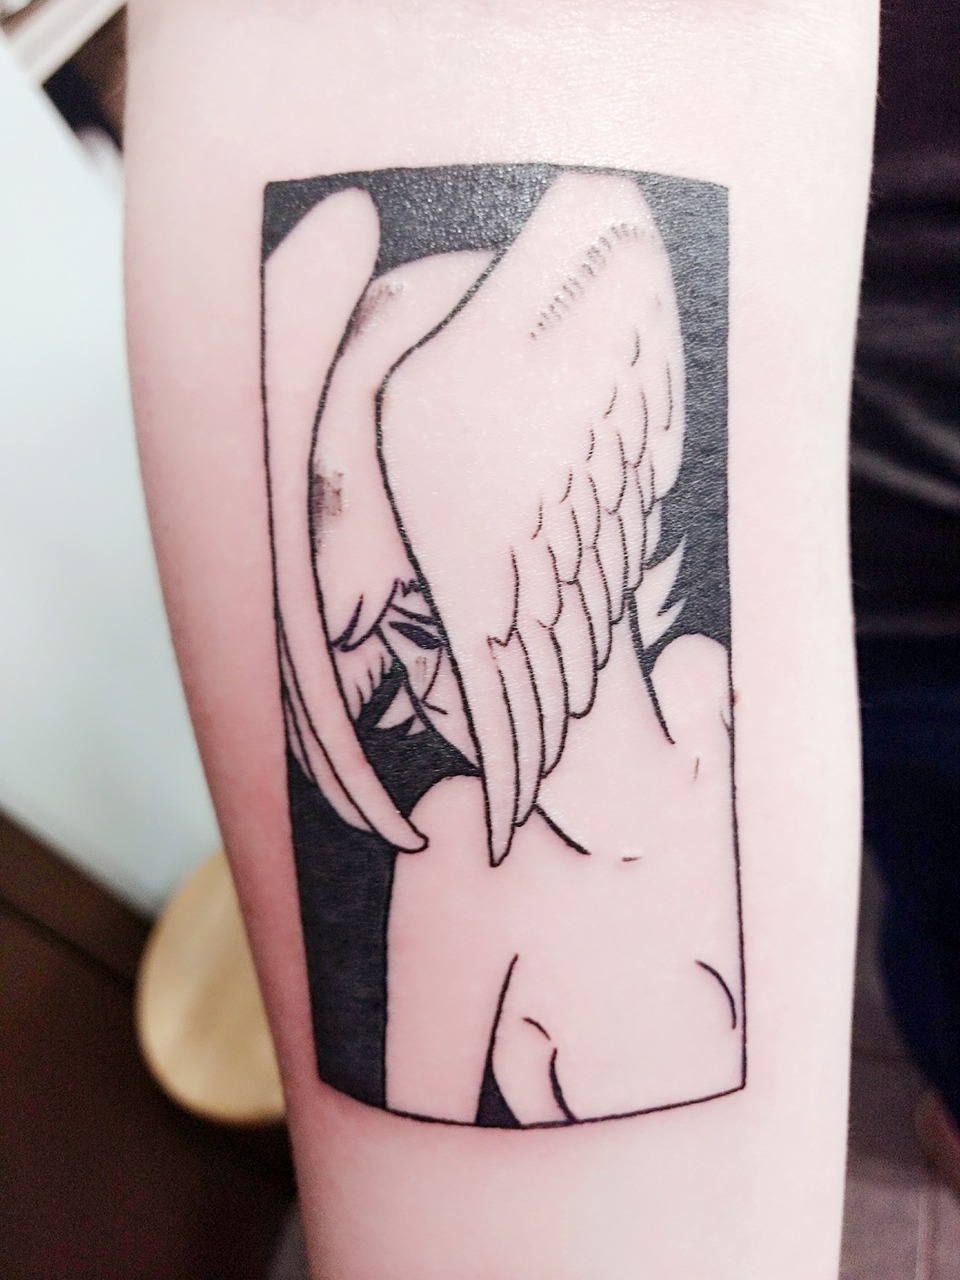 devilman tattoo | Tumblr
